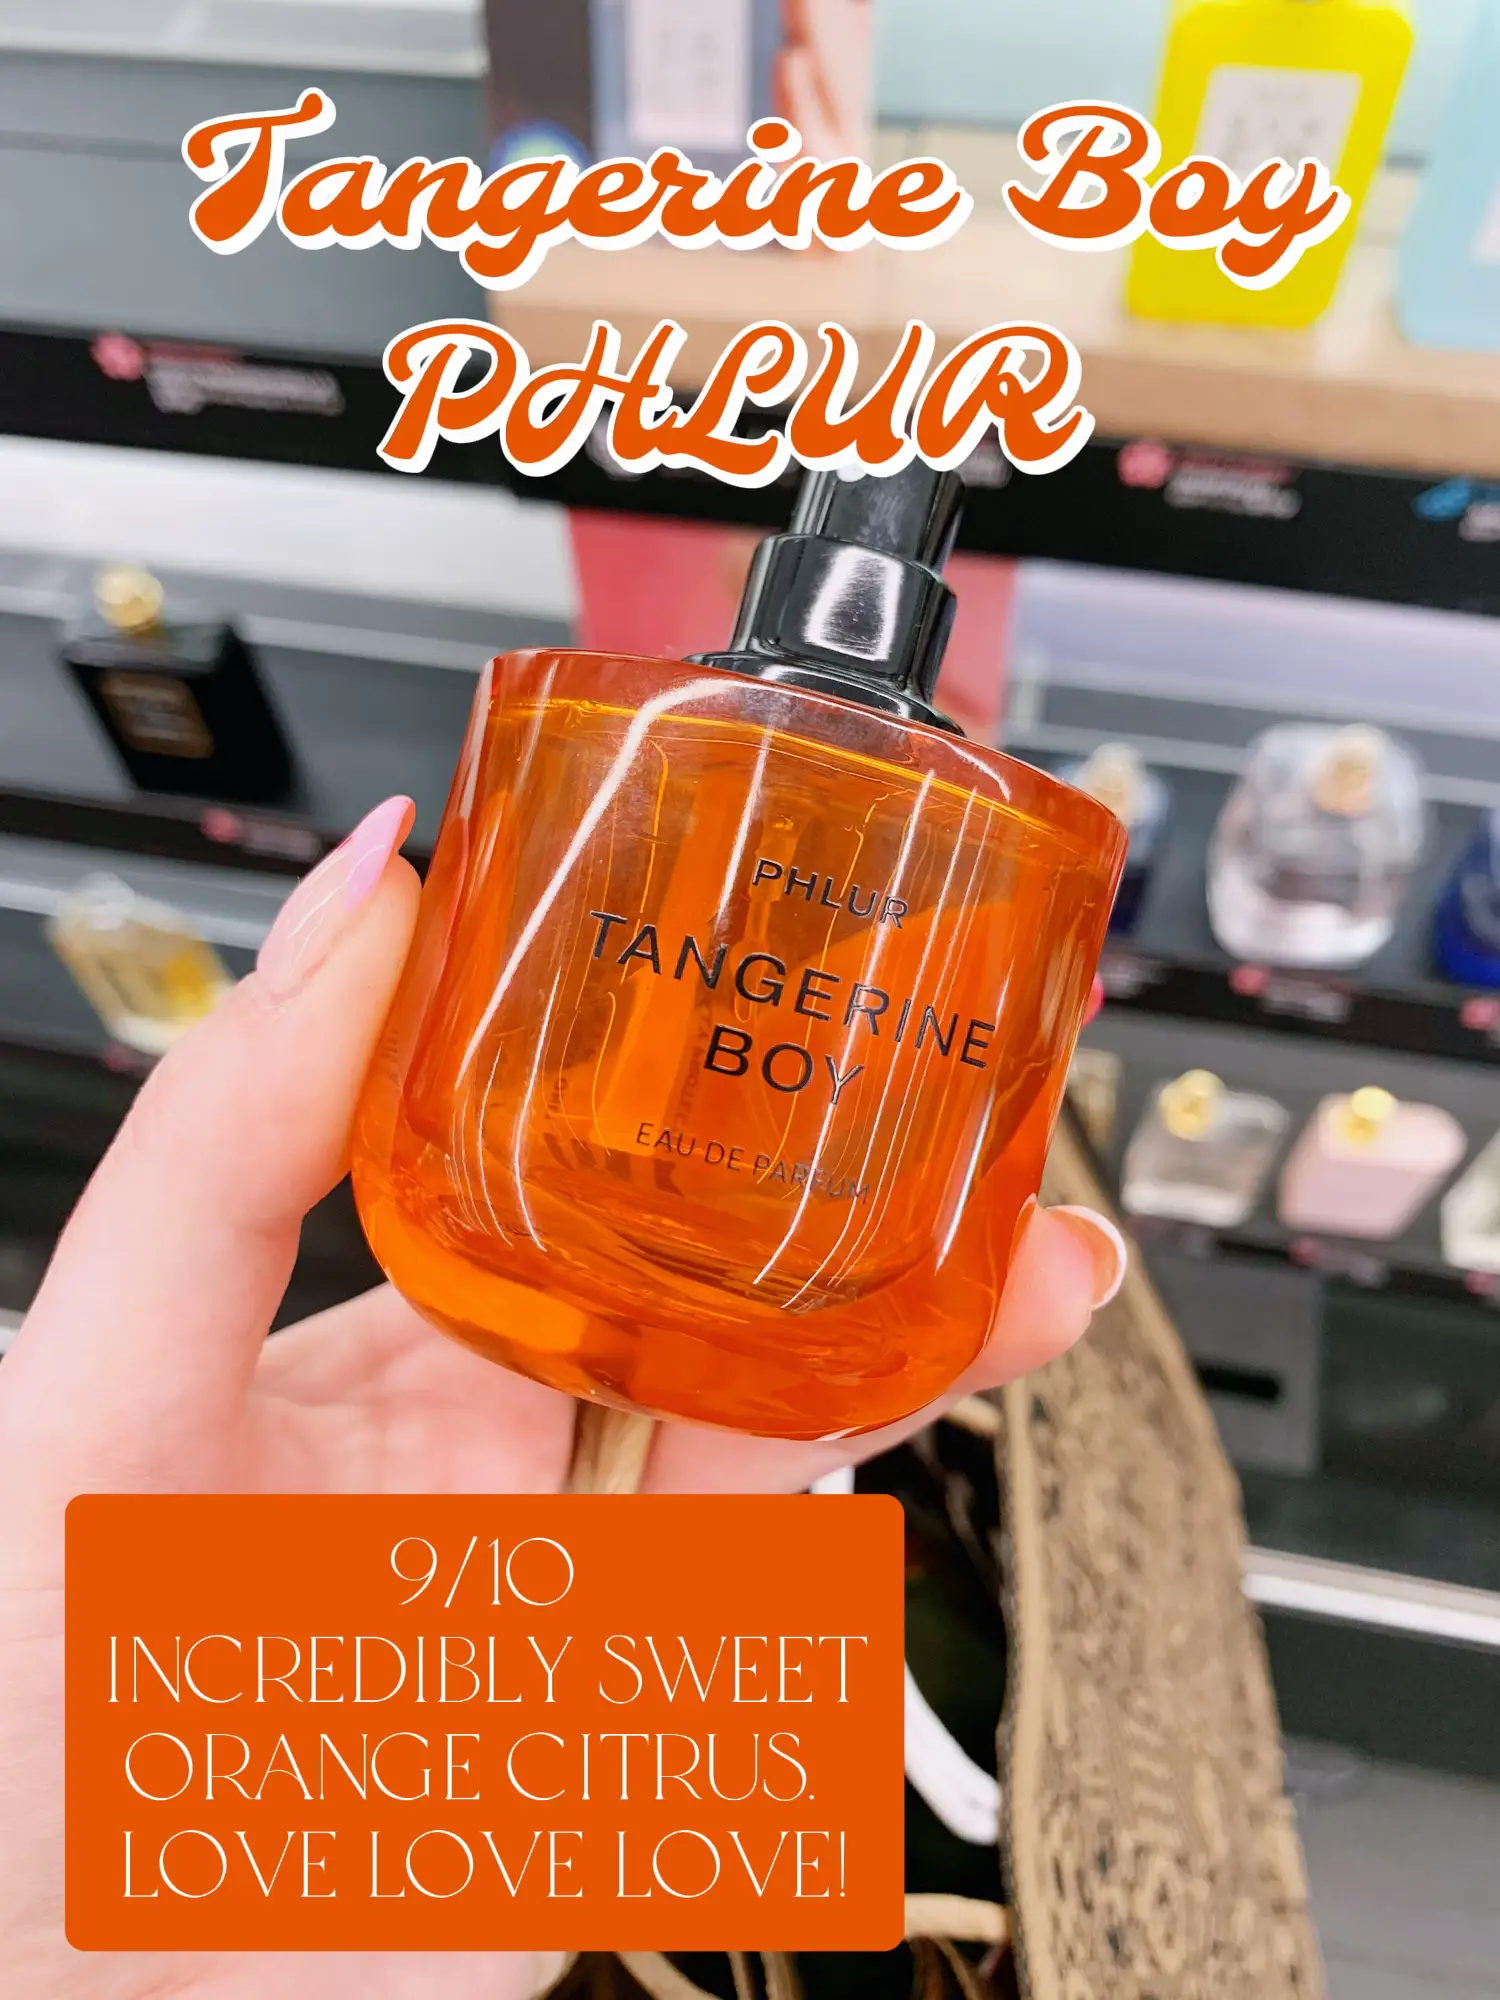 Tangerine Boy - Full Size Fragrance - Phlur